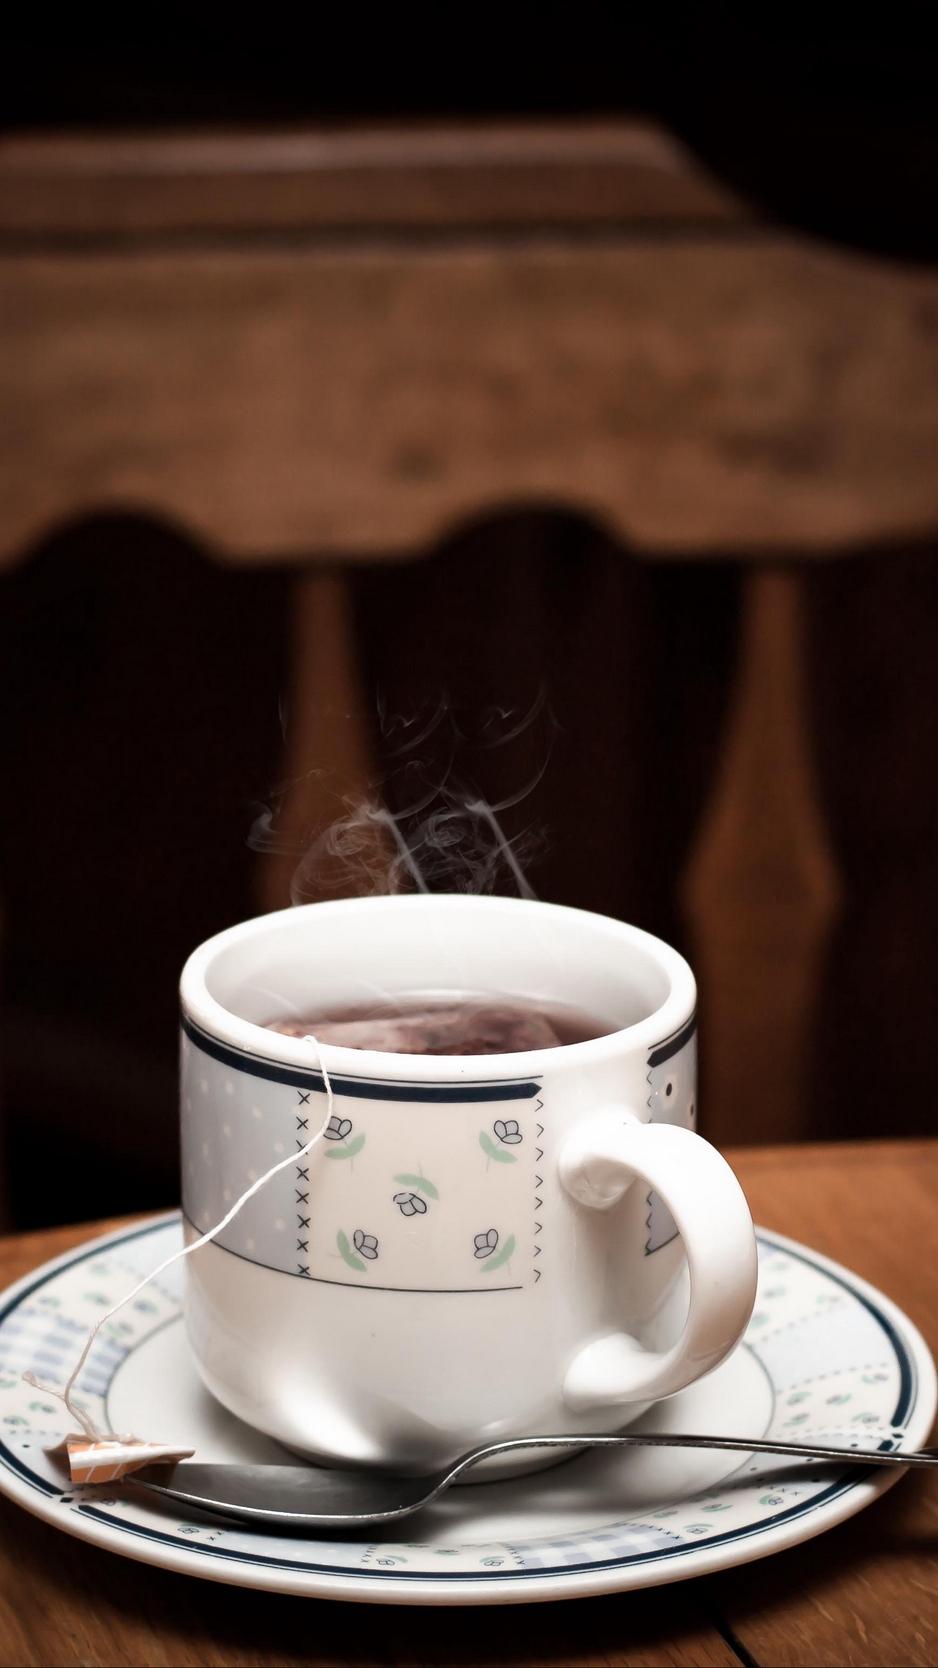 Download wallpaper 938x1668 cup, tea, table, drink, vapor